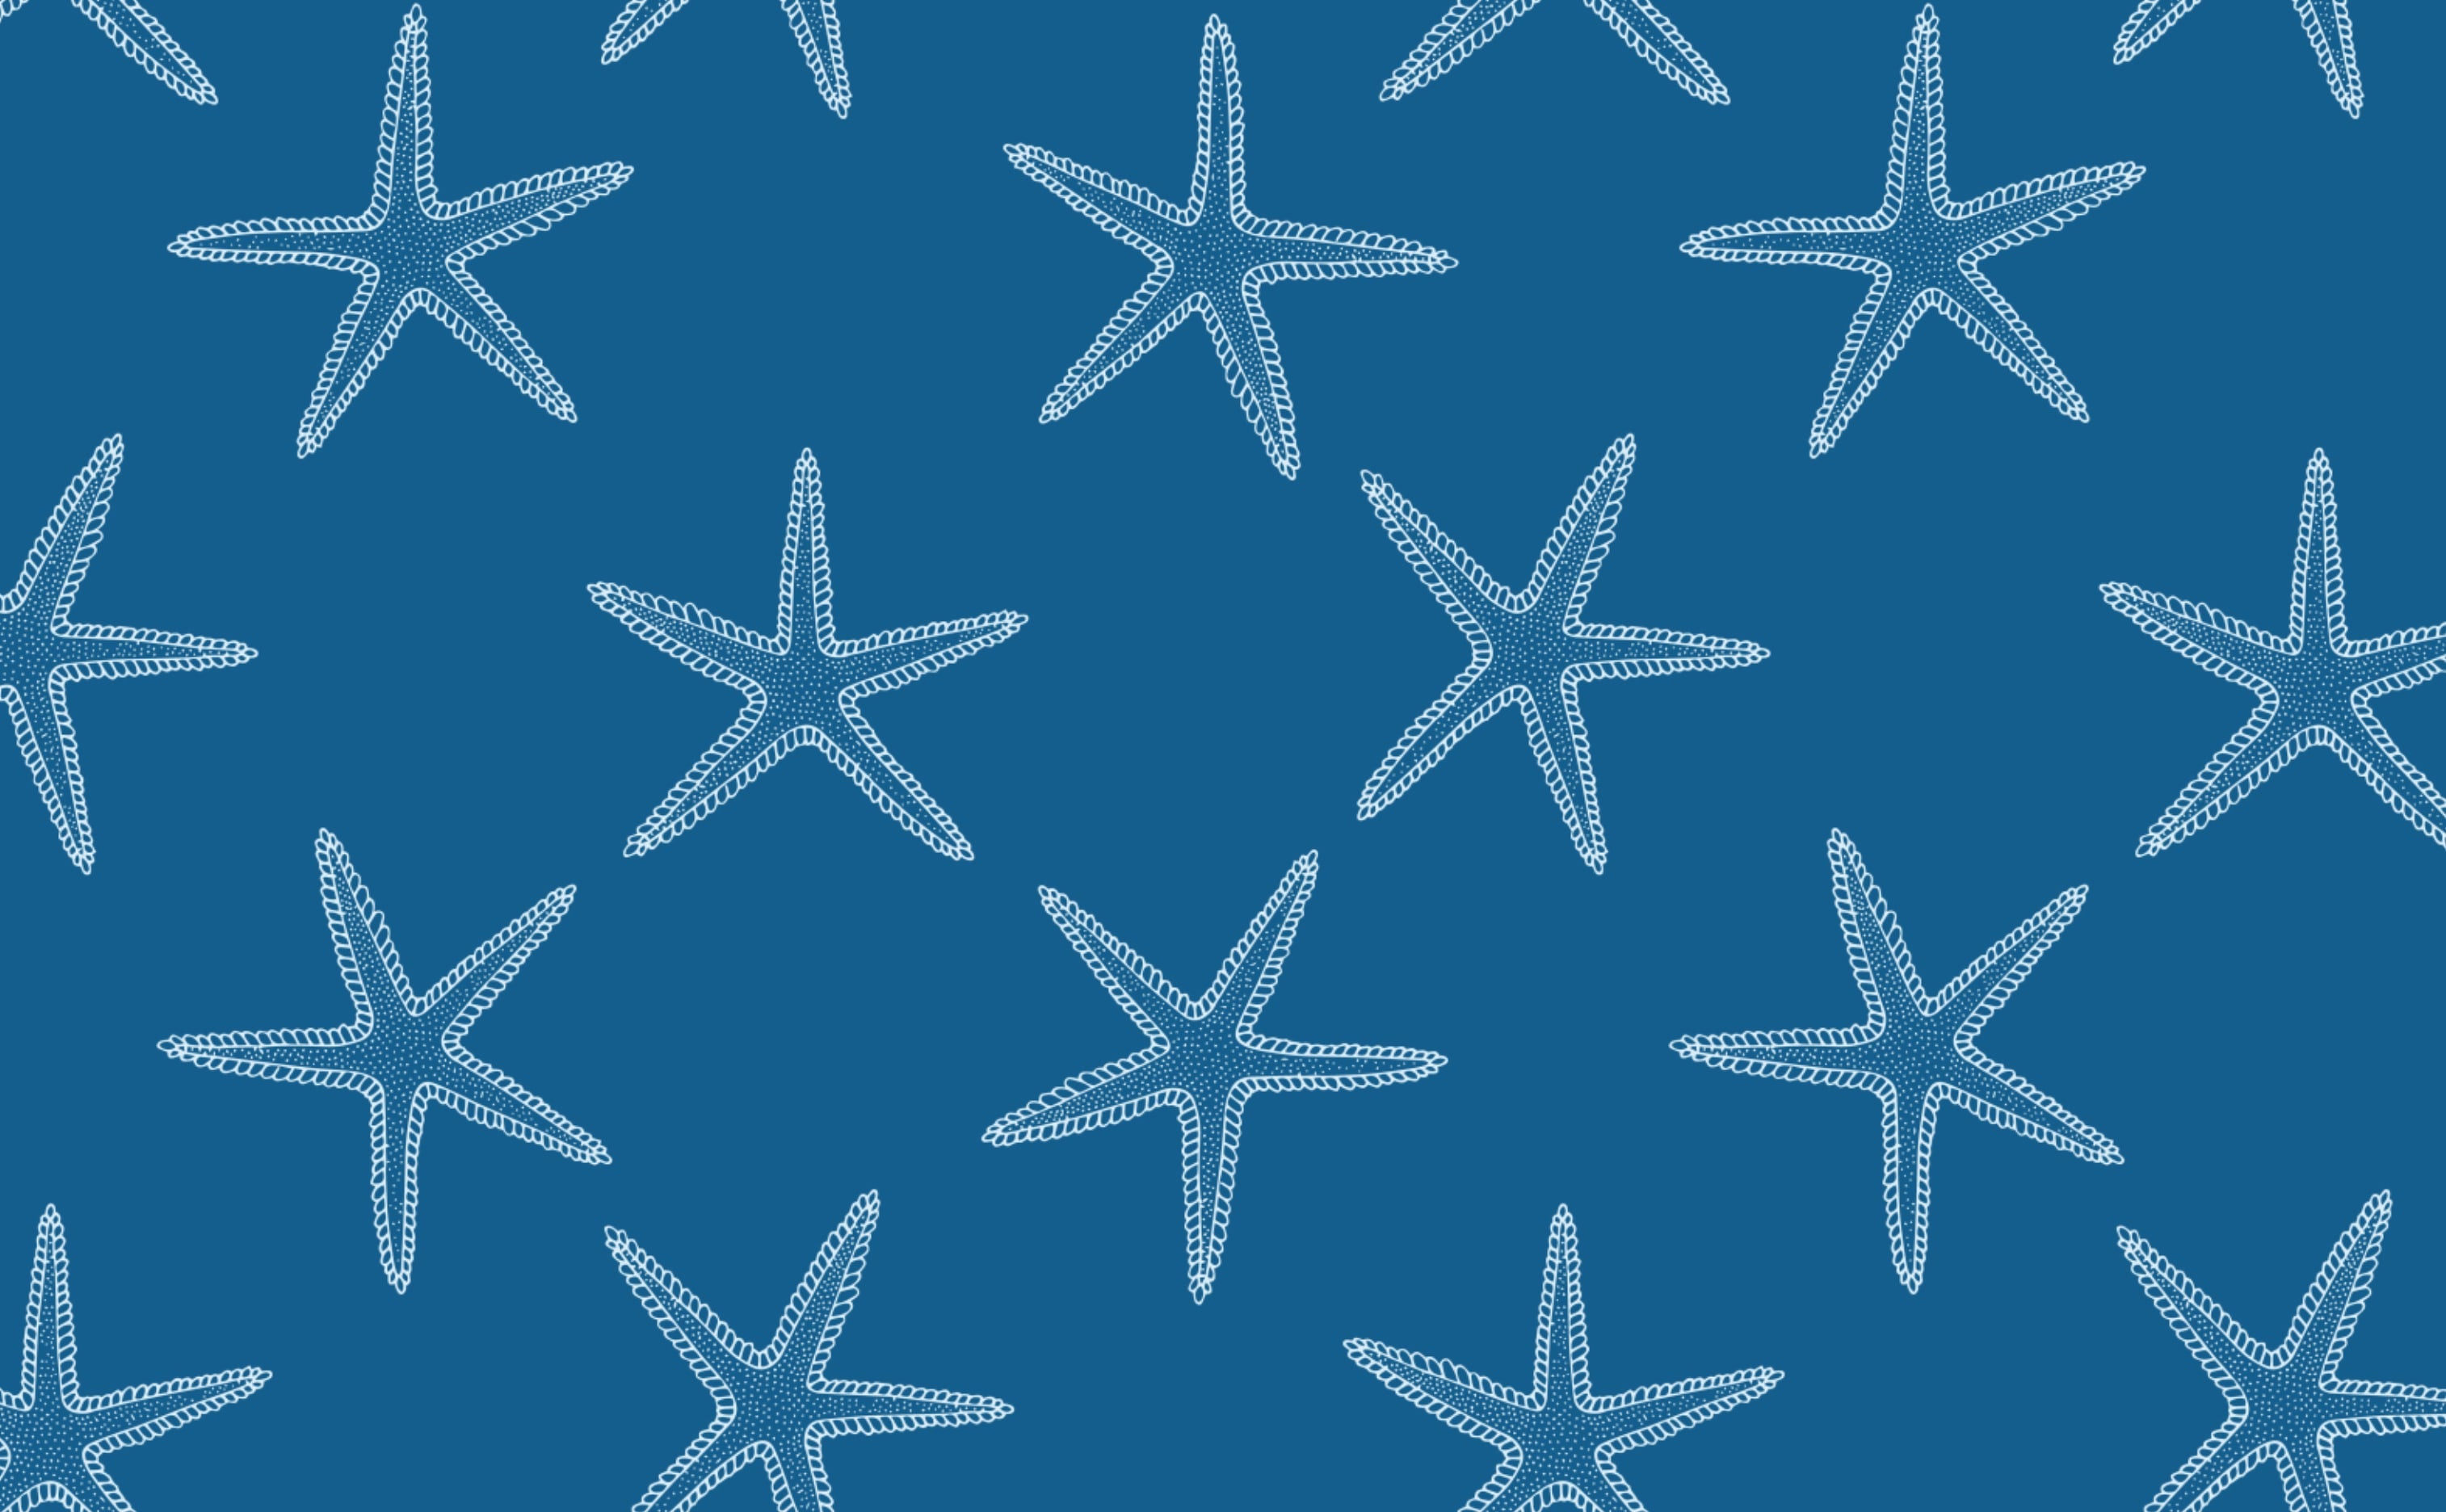 Giấy dán tường Starfish cho tường trong phong cách Bootstrap Bill Turner sẽ giúp cho căn phòng của bạn trở nên rực rỡ hơn. Hình ảnh Starfish được thiết kế bởi Bootstrap Bill Turner đem lại cảm hứng vô tận và tràn đầy sáng tạo cho người xem.